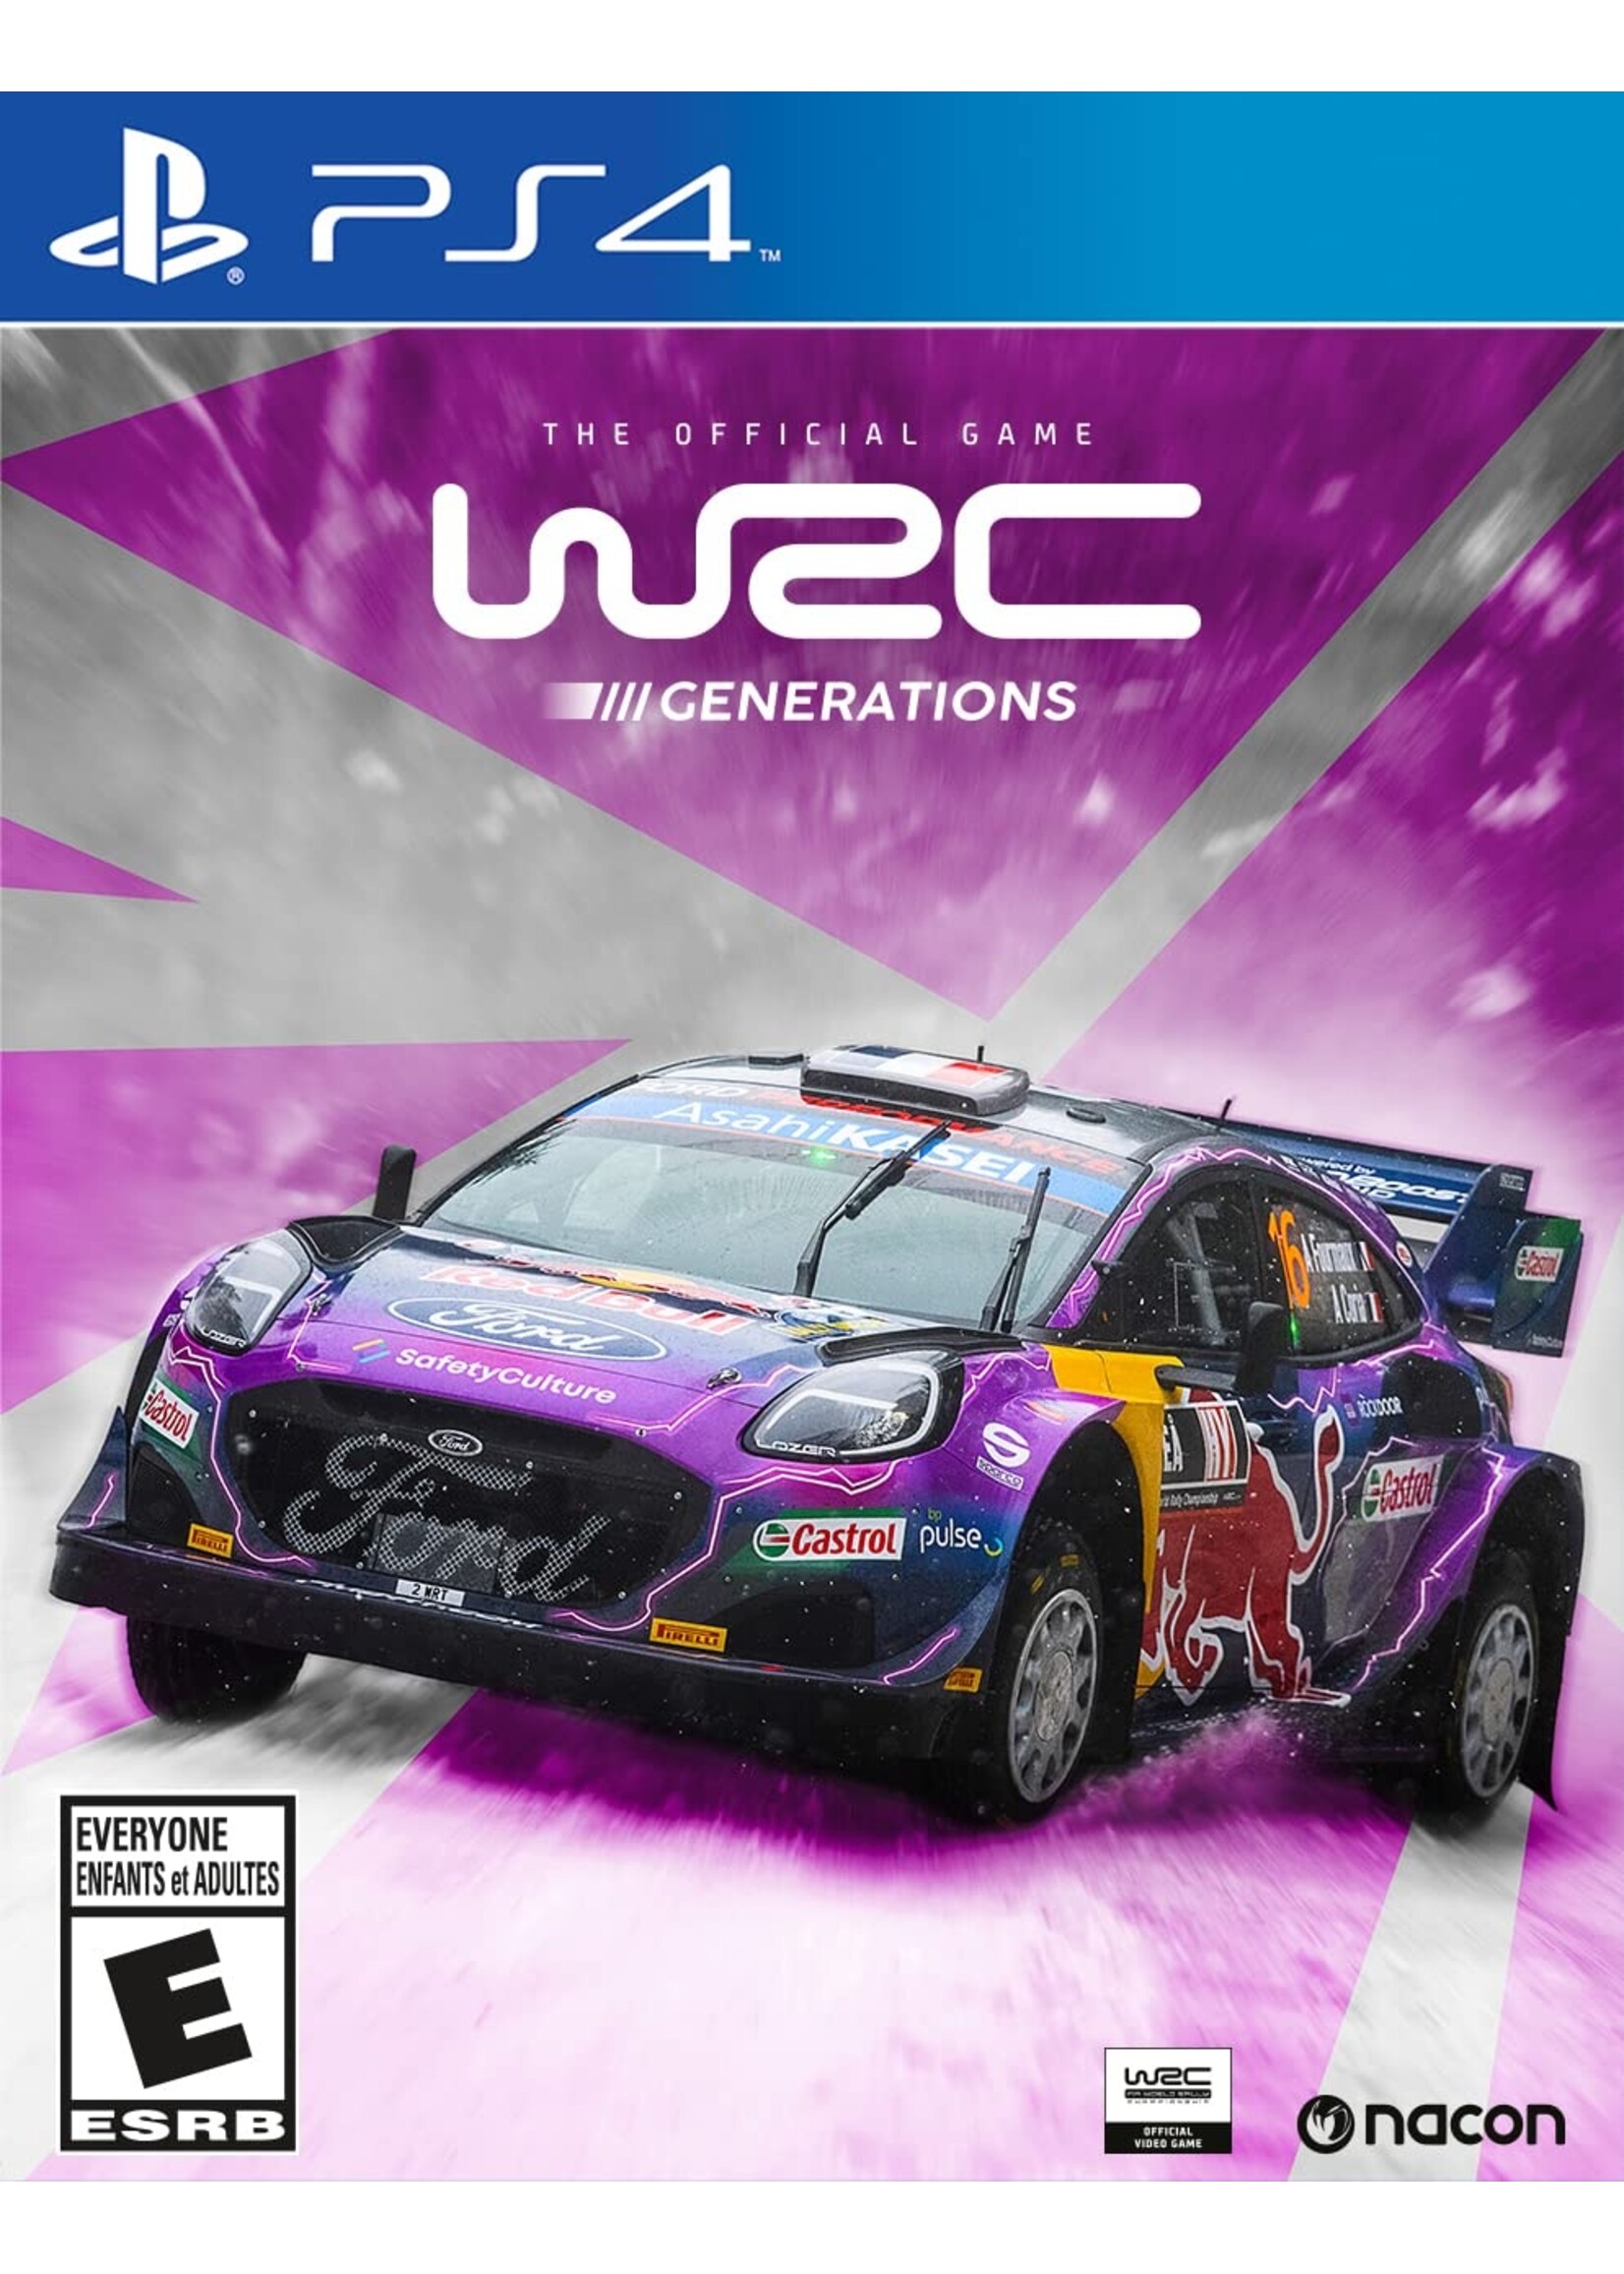 WRC Generations  - PS4 NEW